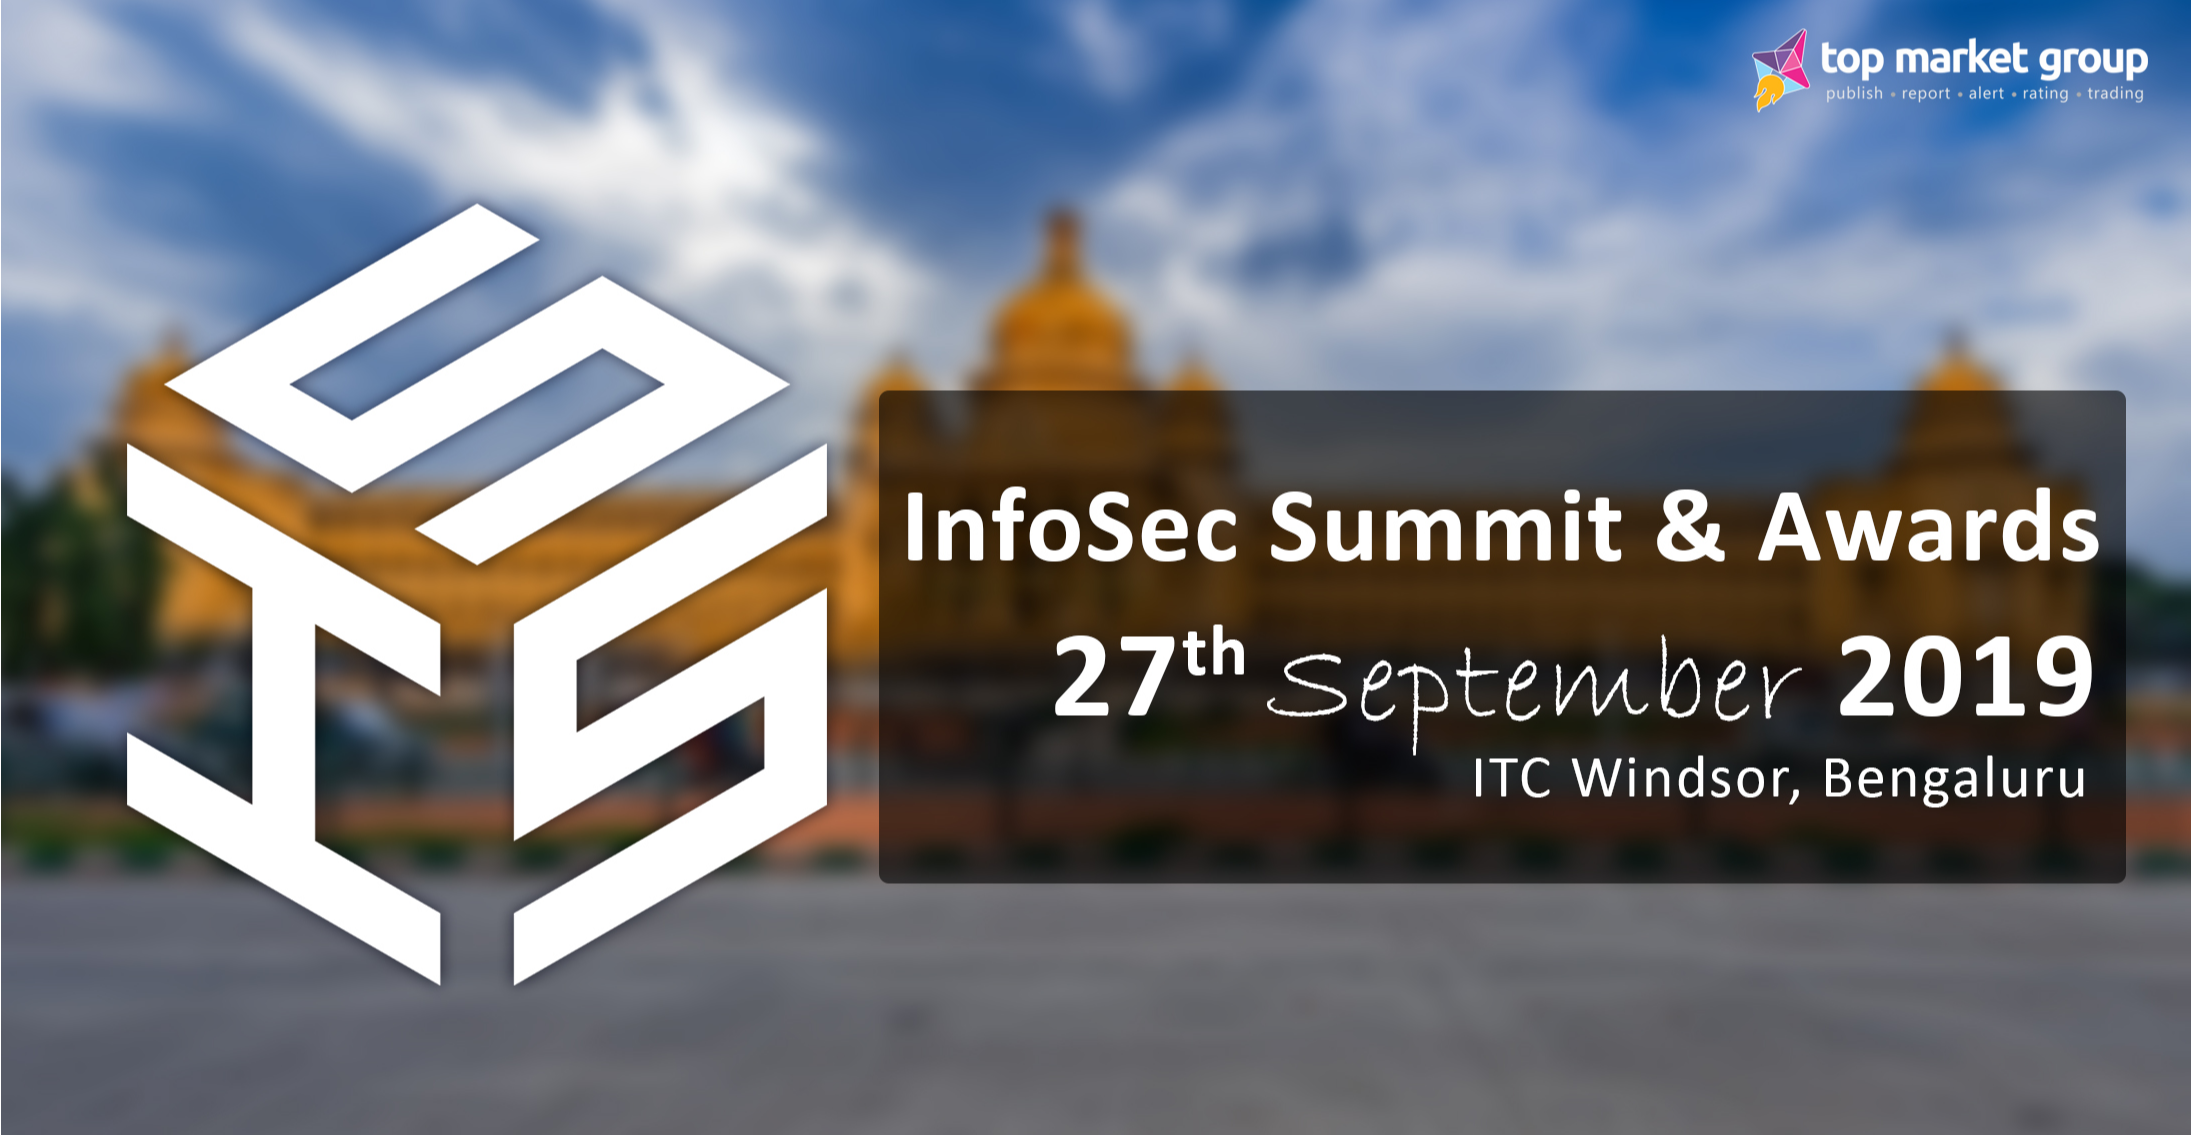  InfoSec Summit & Awards 27th September at ITC Windsor, Bengaluru